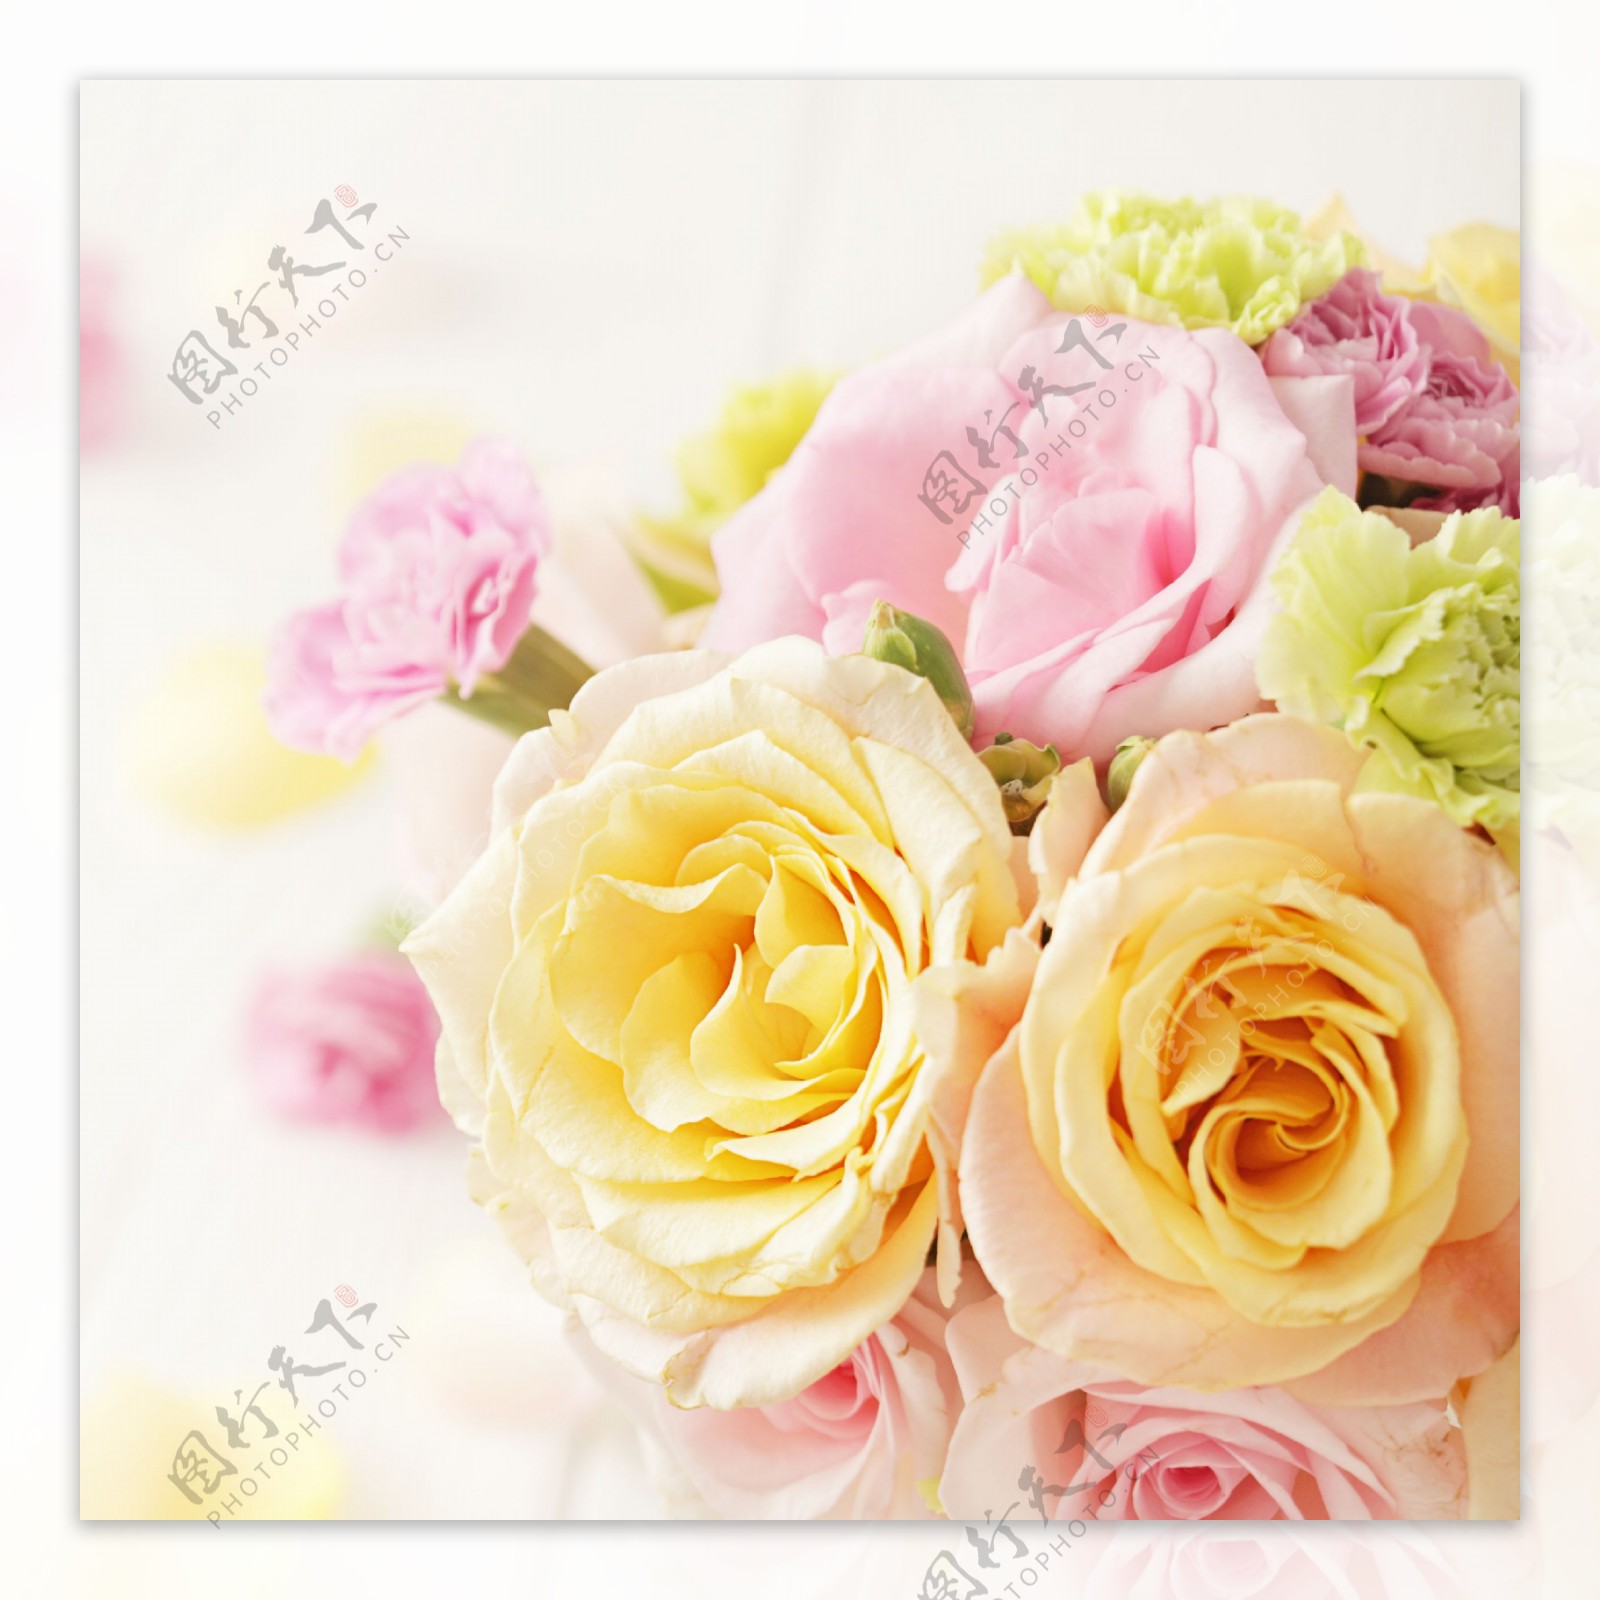 黄玫瑰与粉玫瑰图片